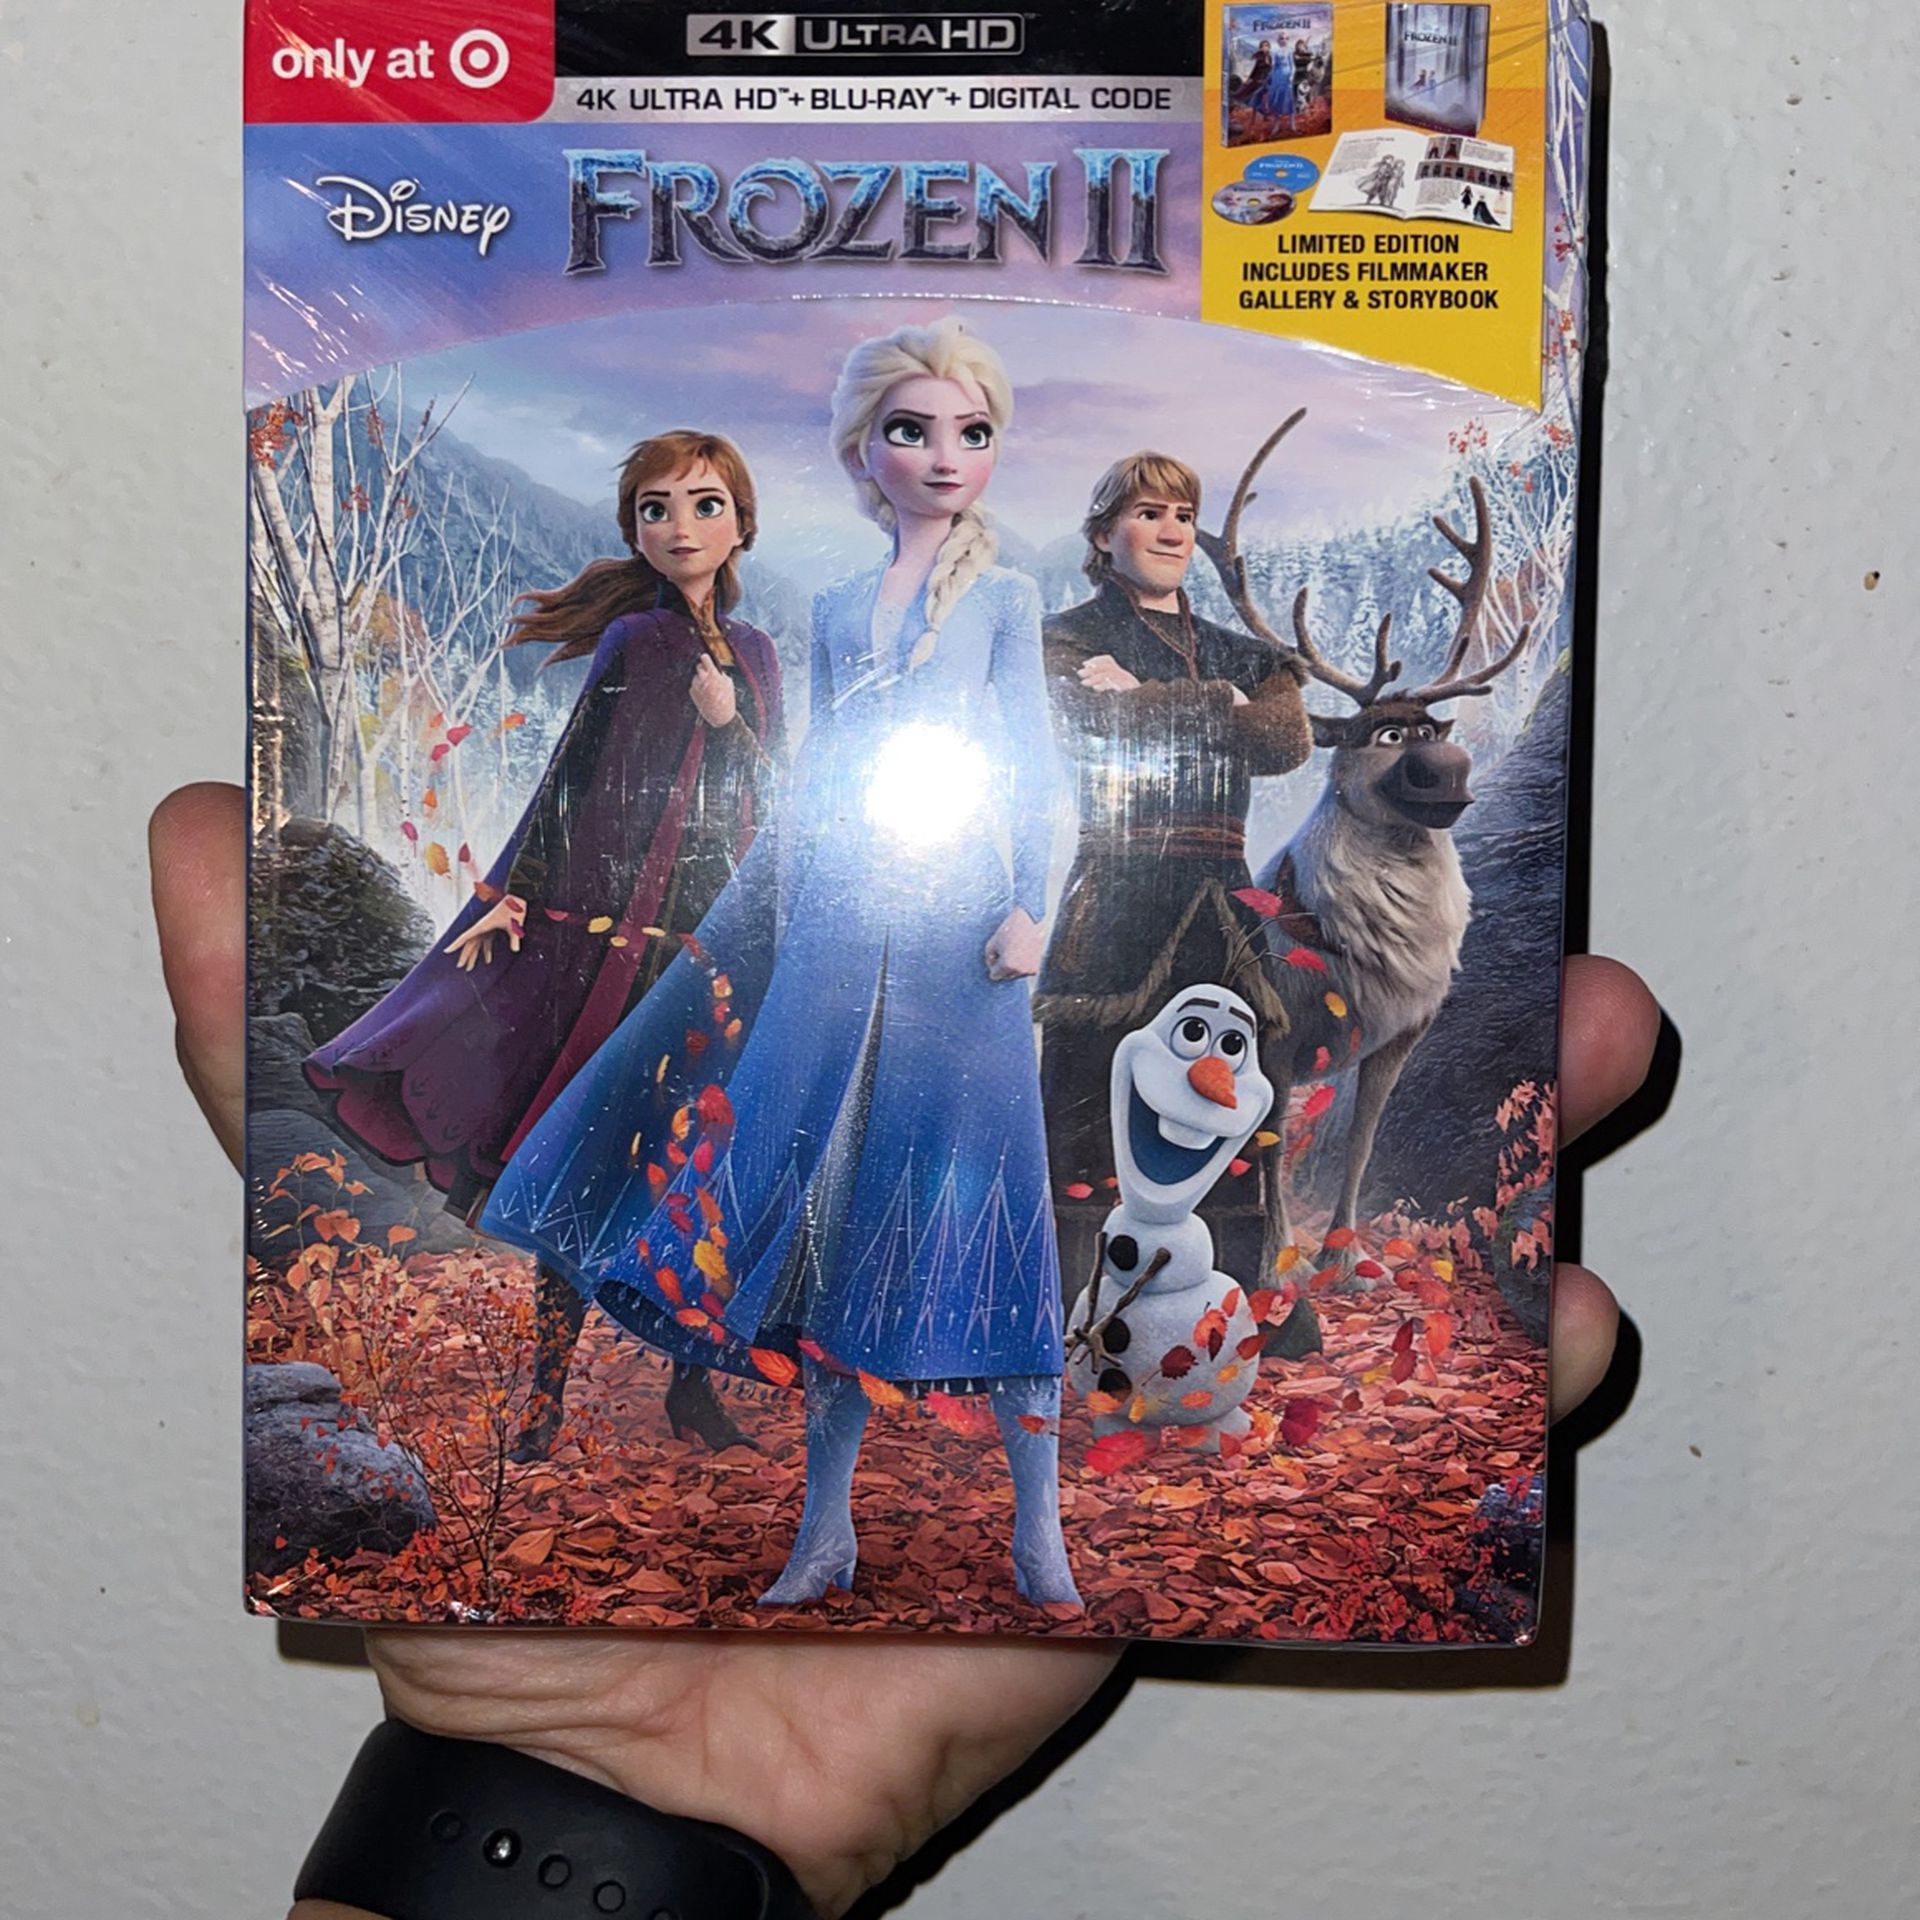 Frozen II Limited Edition - 4K Ultra HD + Blu-Ray + Digital Code